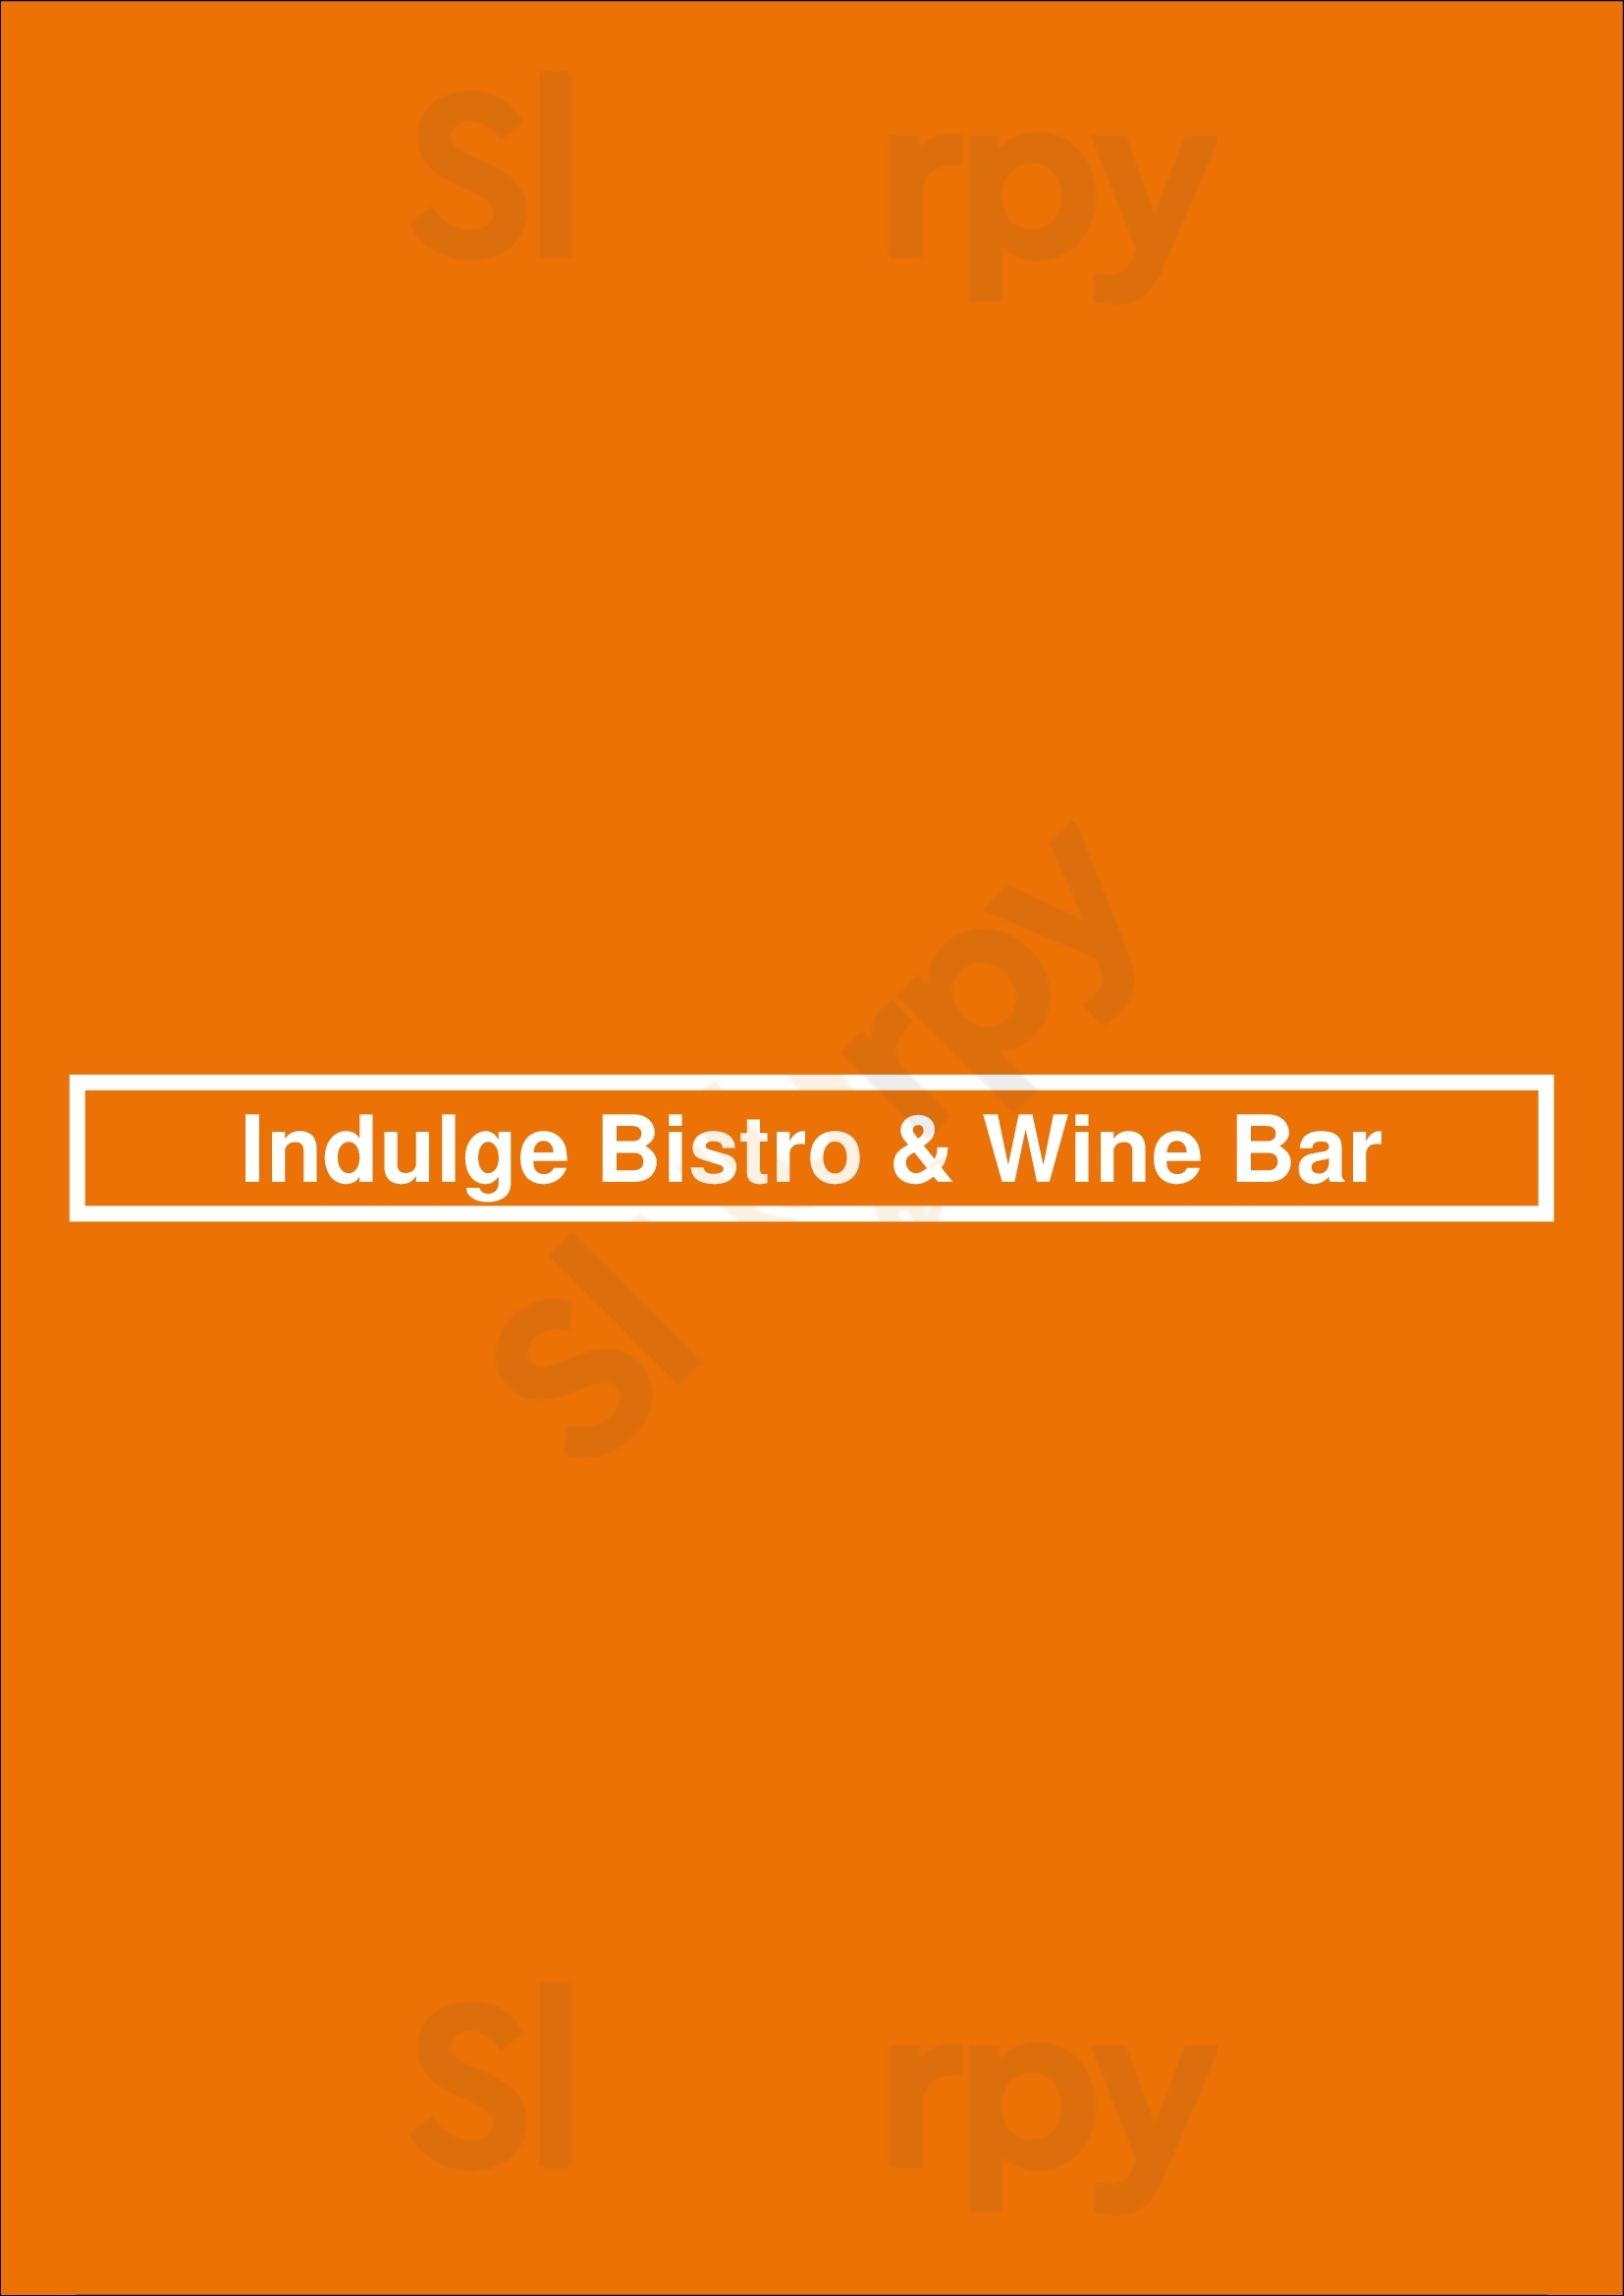 Indulge Bistro & Wine Bar Golden Menu - 1